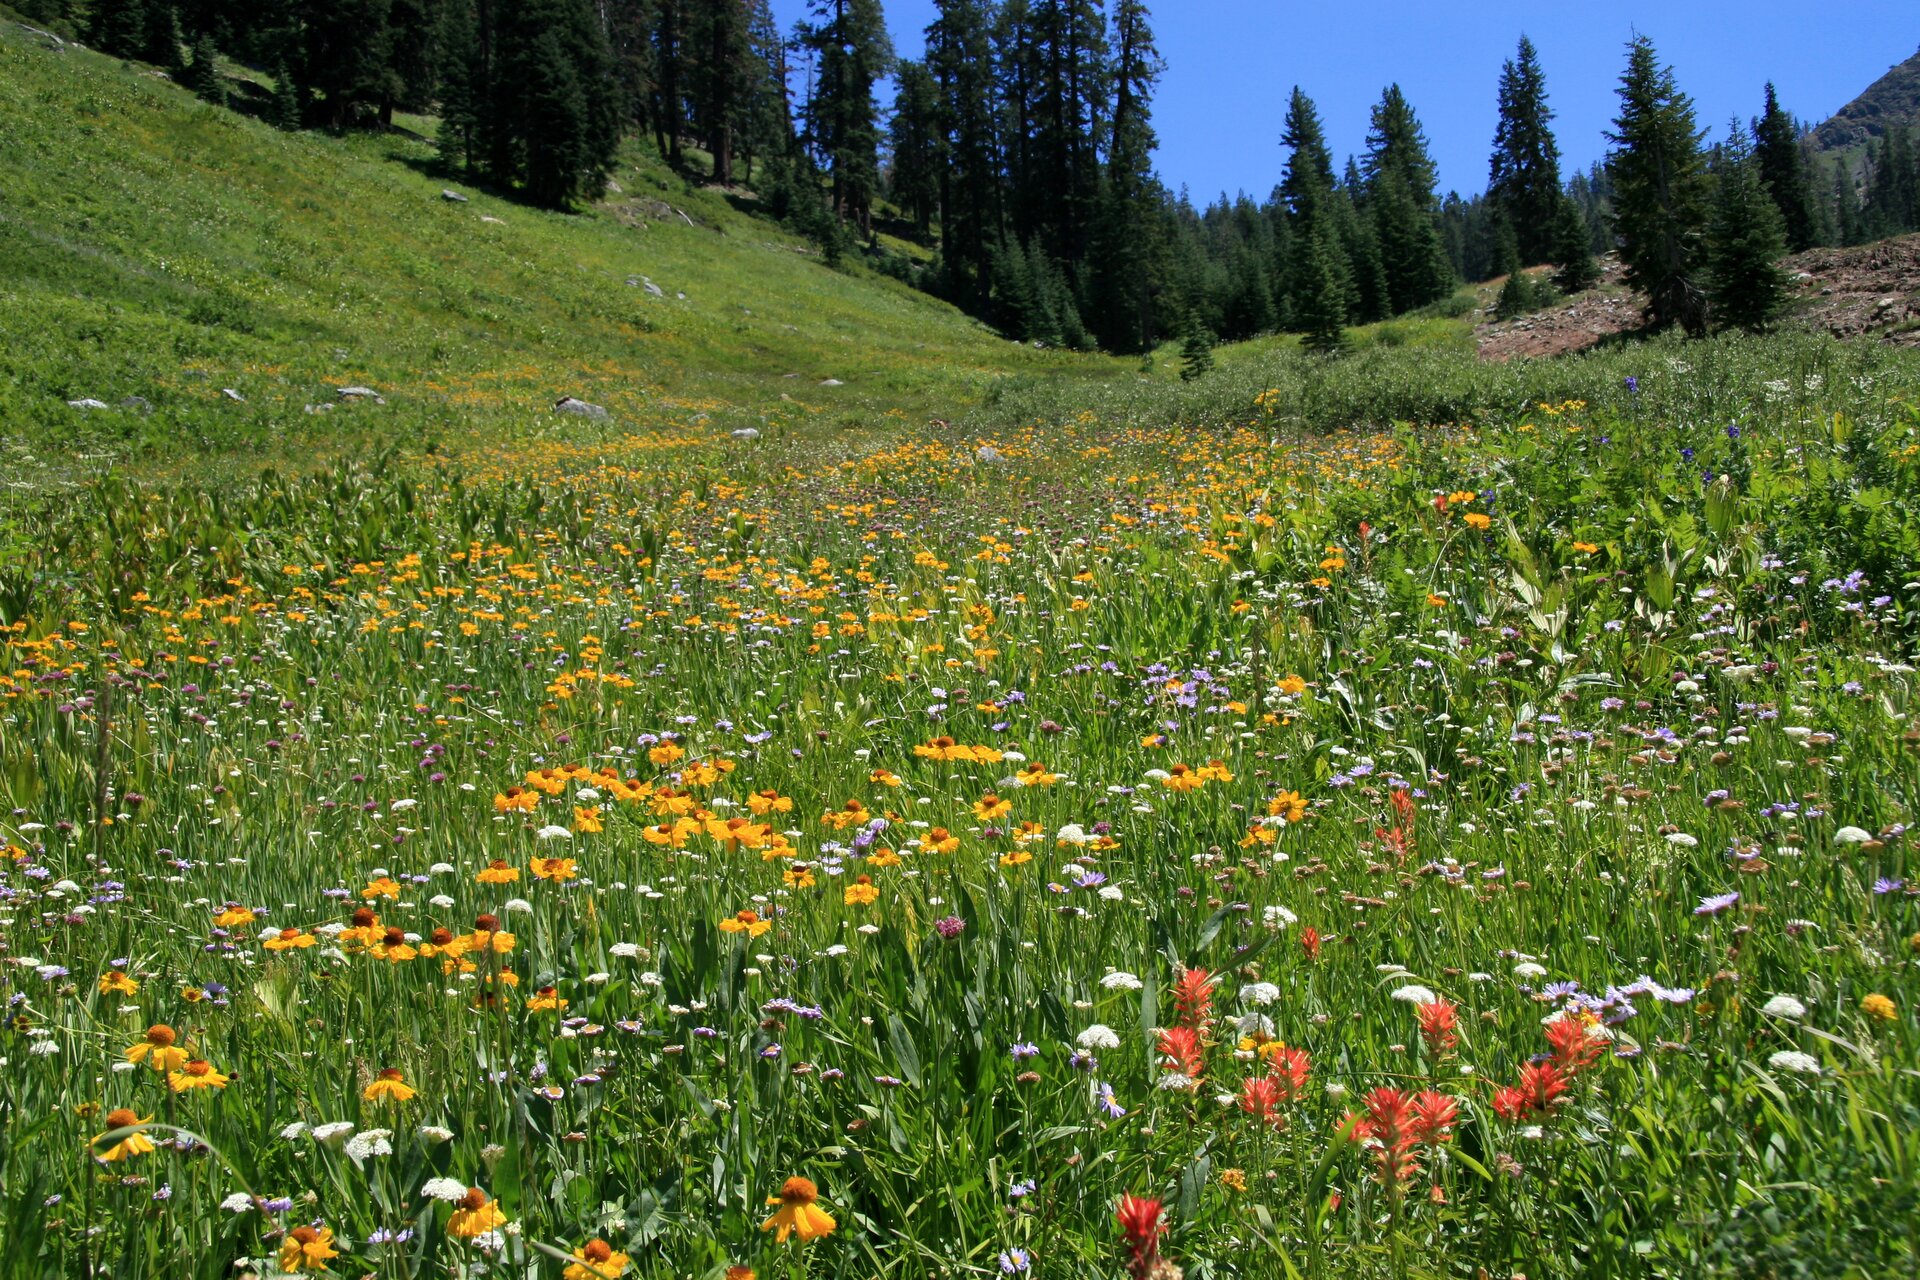 Zdjęcie przedstawia łąkę z dużym udziałem kwitnących roślin zielnych. Kolory kwiatów to biały, żółty i różowy. W tle znajduje się świerkowy las.